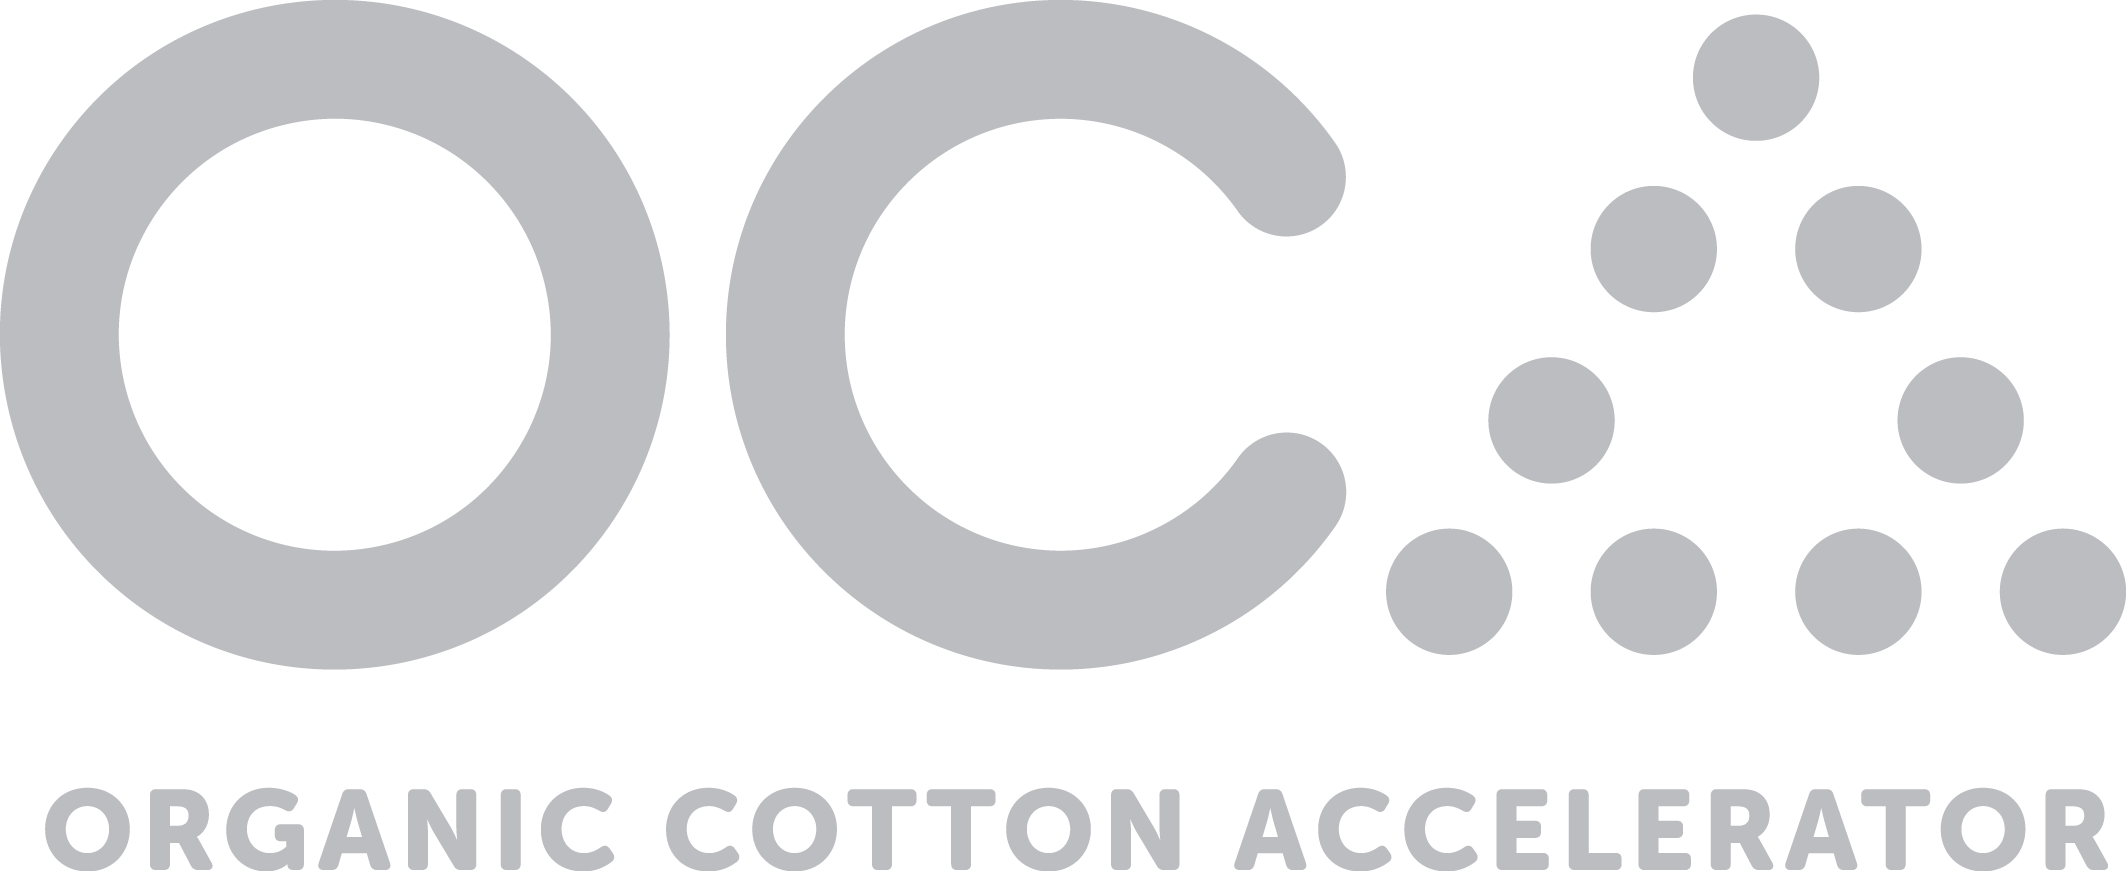 Cotton soft cotton